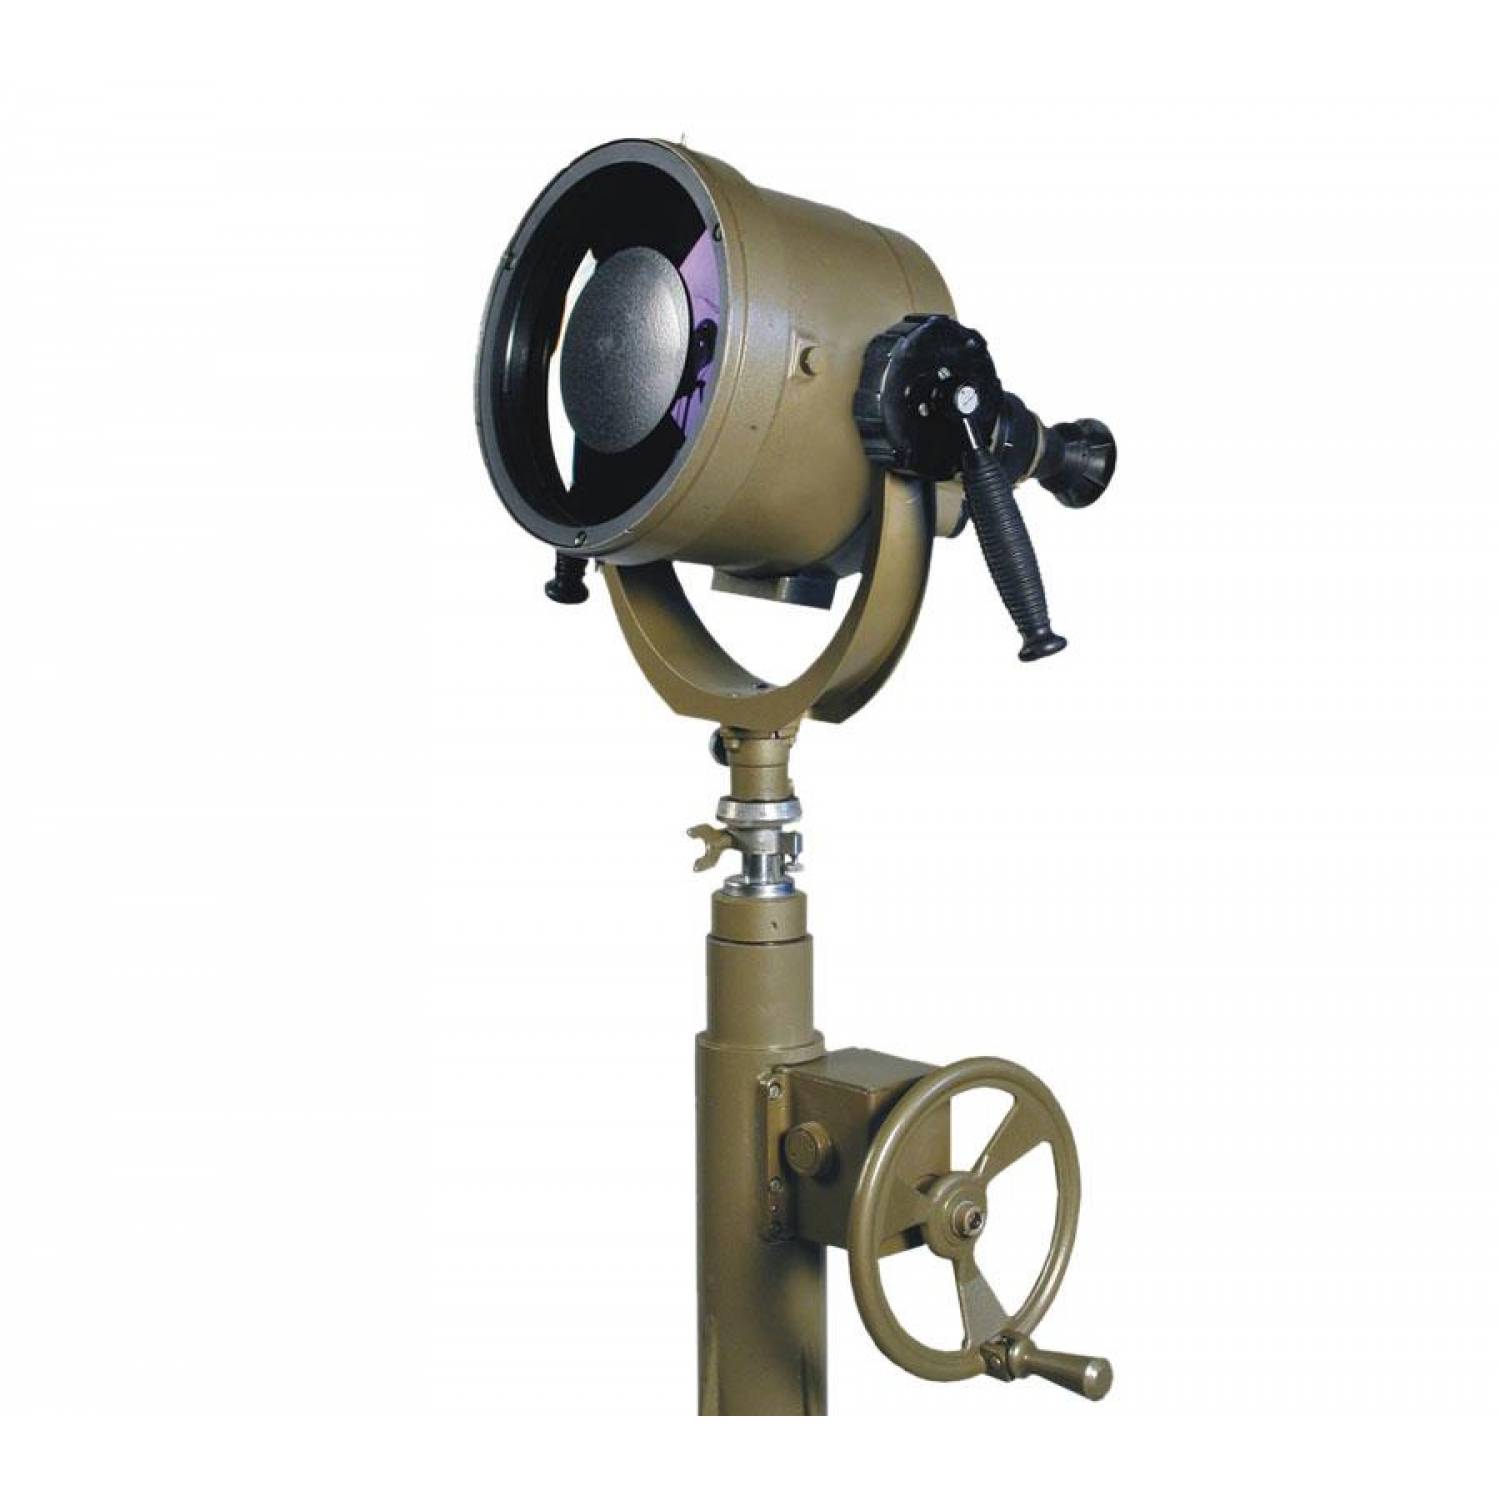 Купить трубу для наблюдения. ПНБ-1 прибор наблюдательный. Бинокуляр ТЗК-80. Ночной наблюдательный прибор ННП-23. ПНБ-2 прибор наблюдательный бинокулярный.